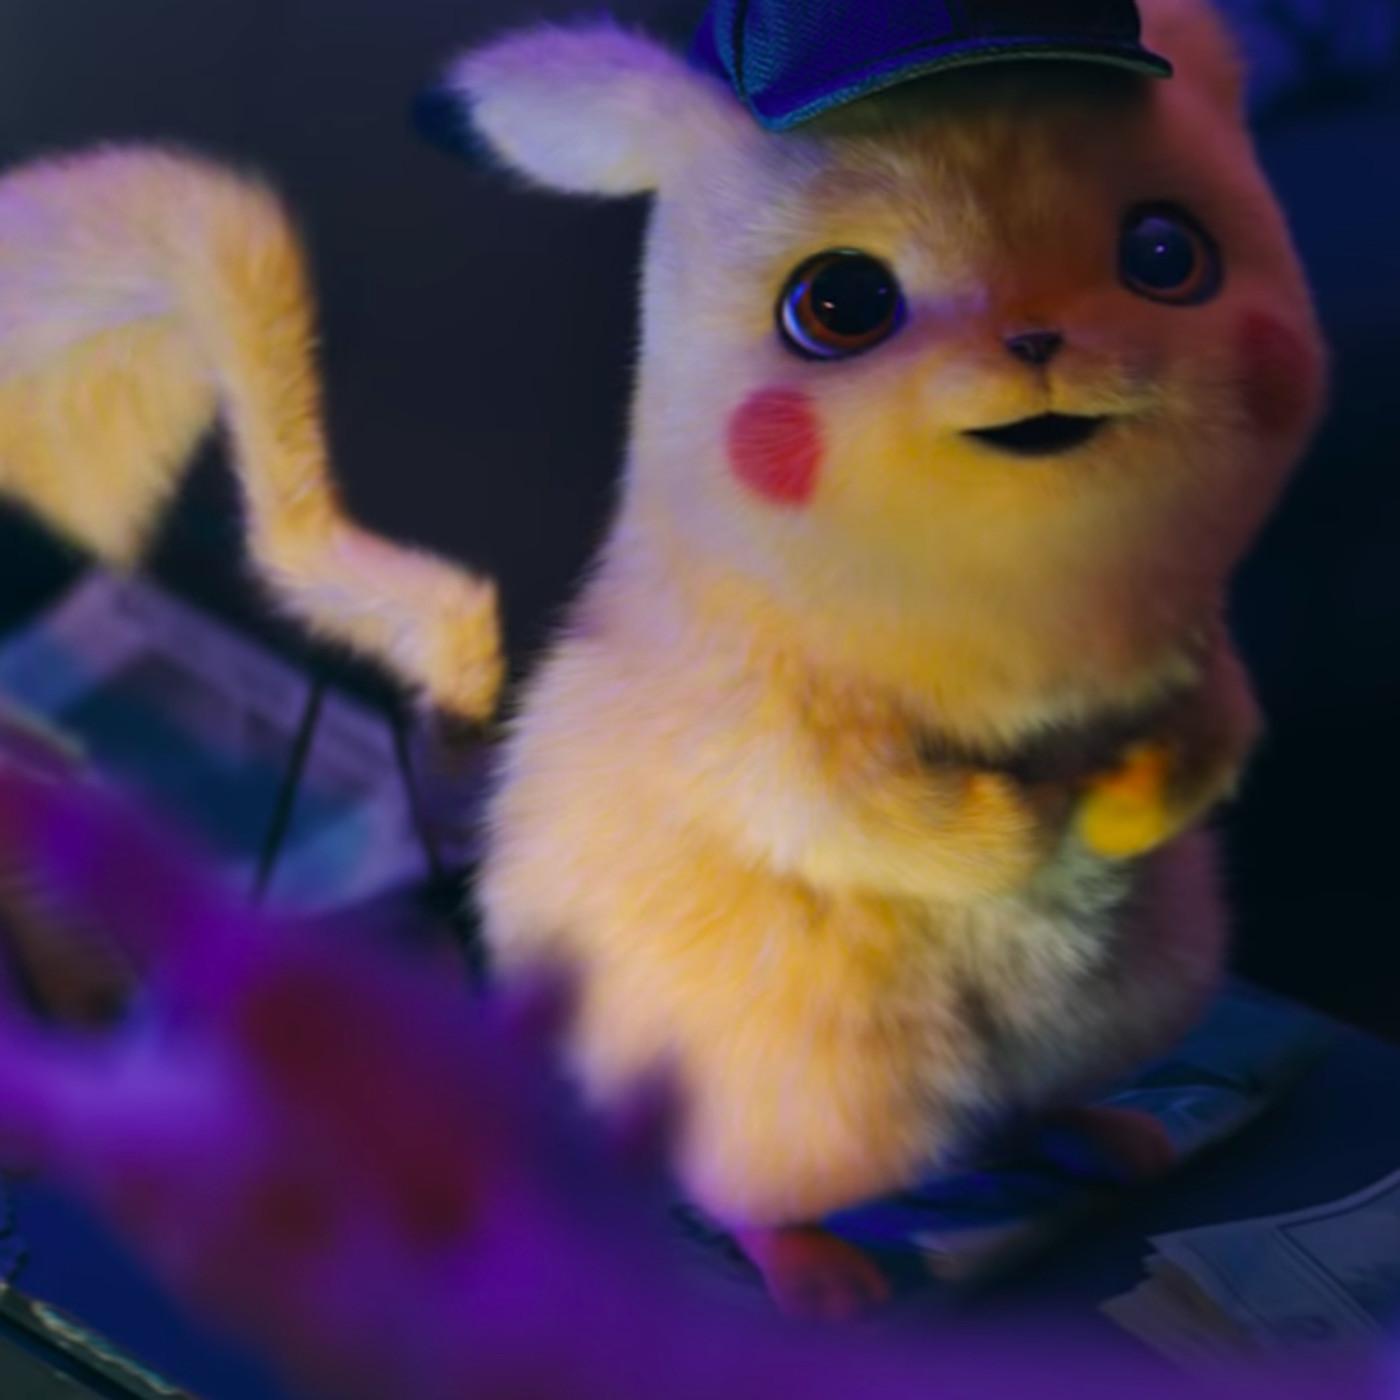 Pokémon Detective Pikachu trailer leaves Pokémon fans divided